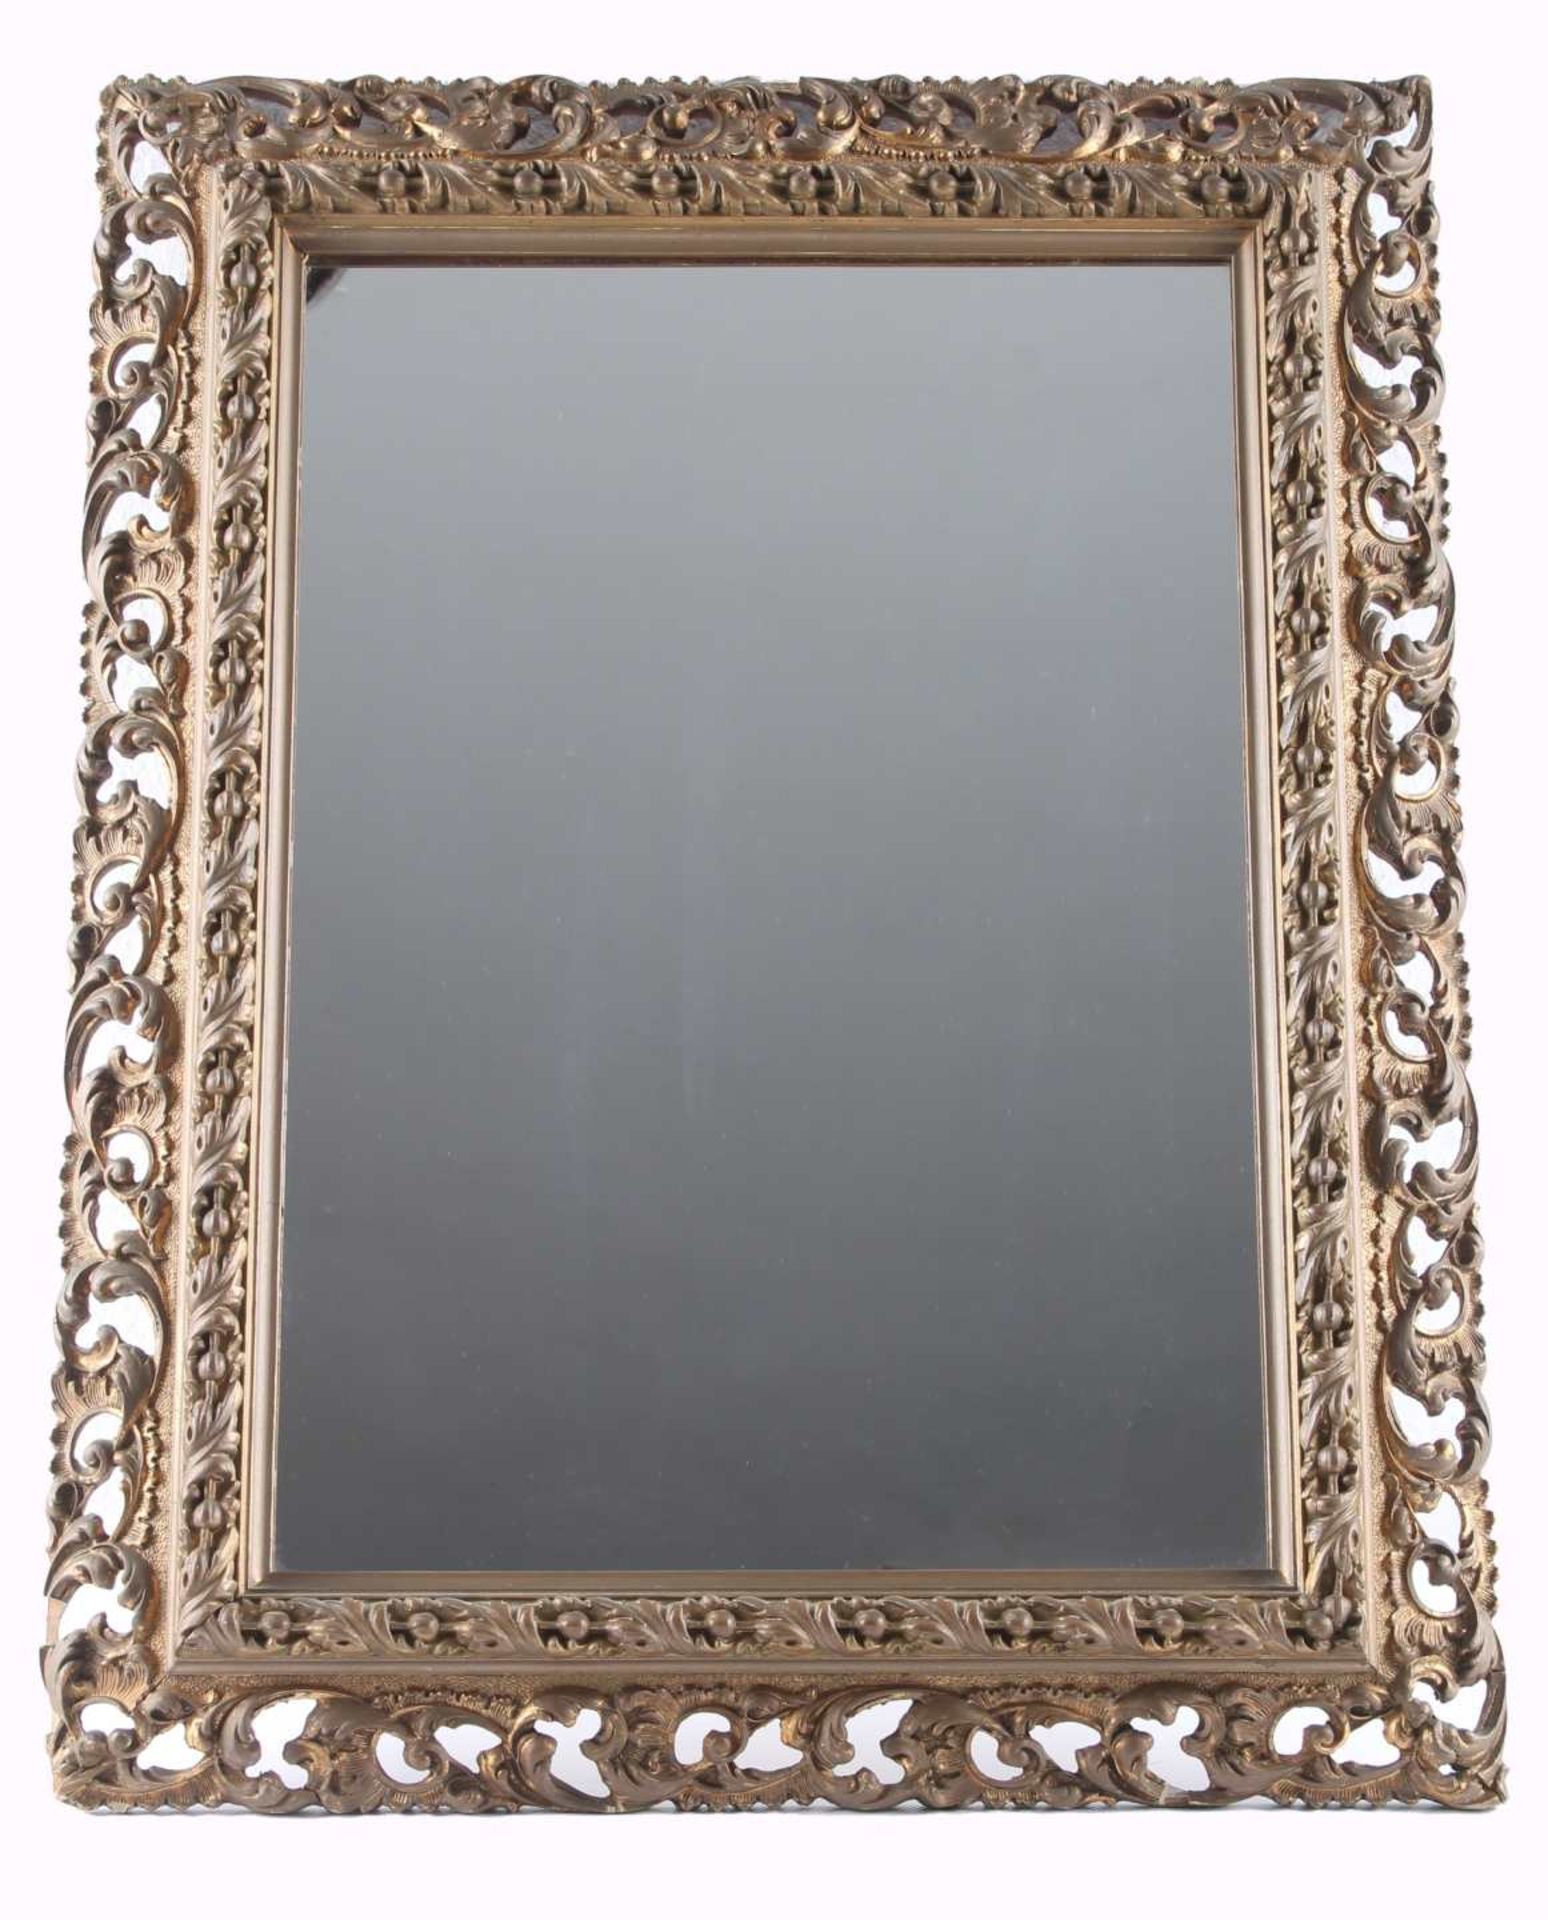 Florentiner Bilderrahmen, florentine wooden frame with mirror,